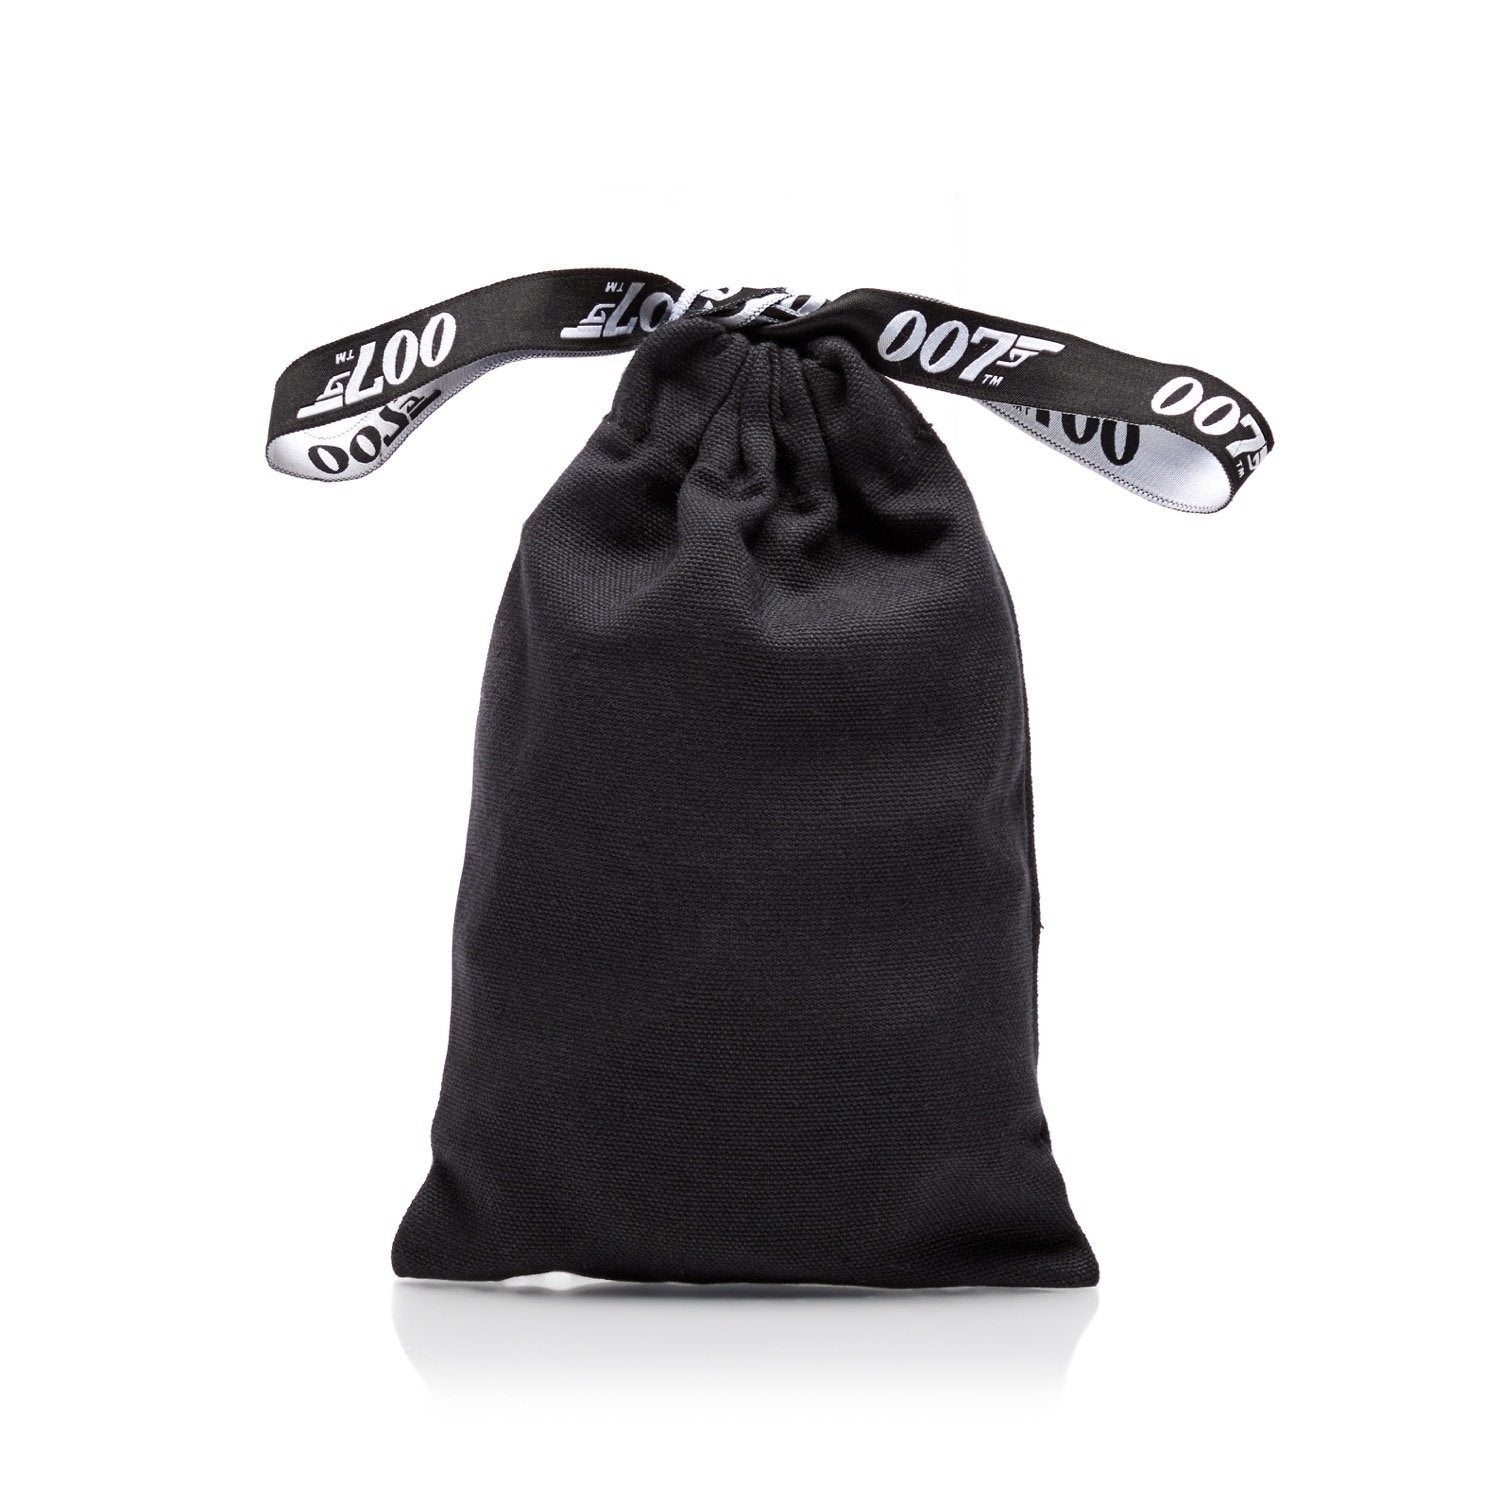 James Bond 007 Cotton Gift Bag GIFT BAG wrapin 